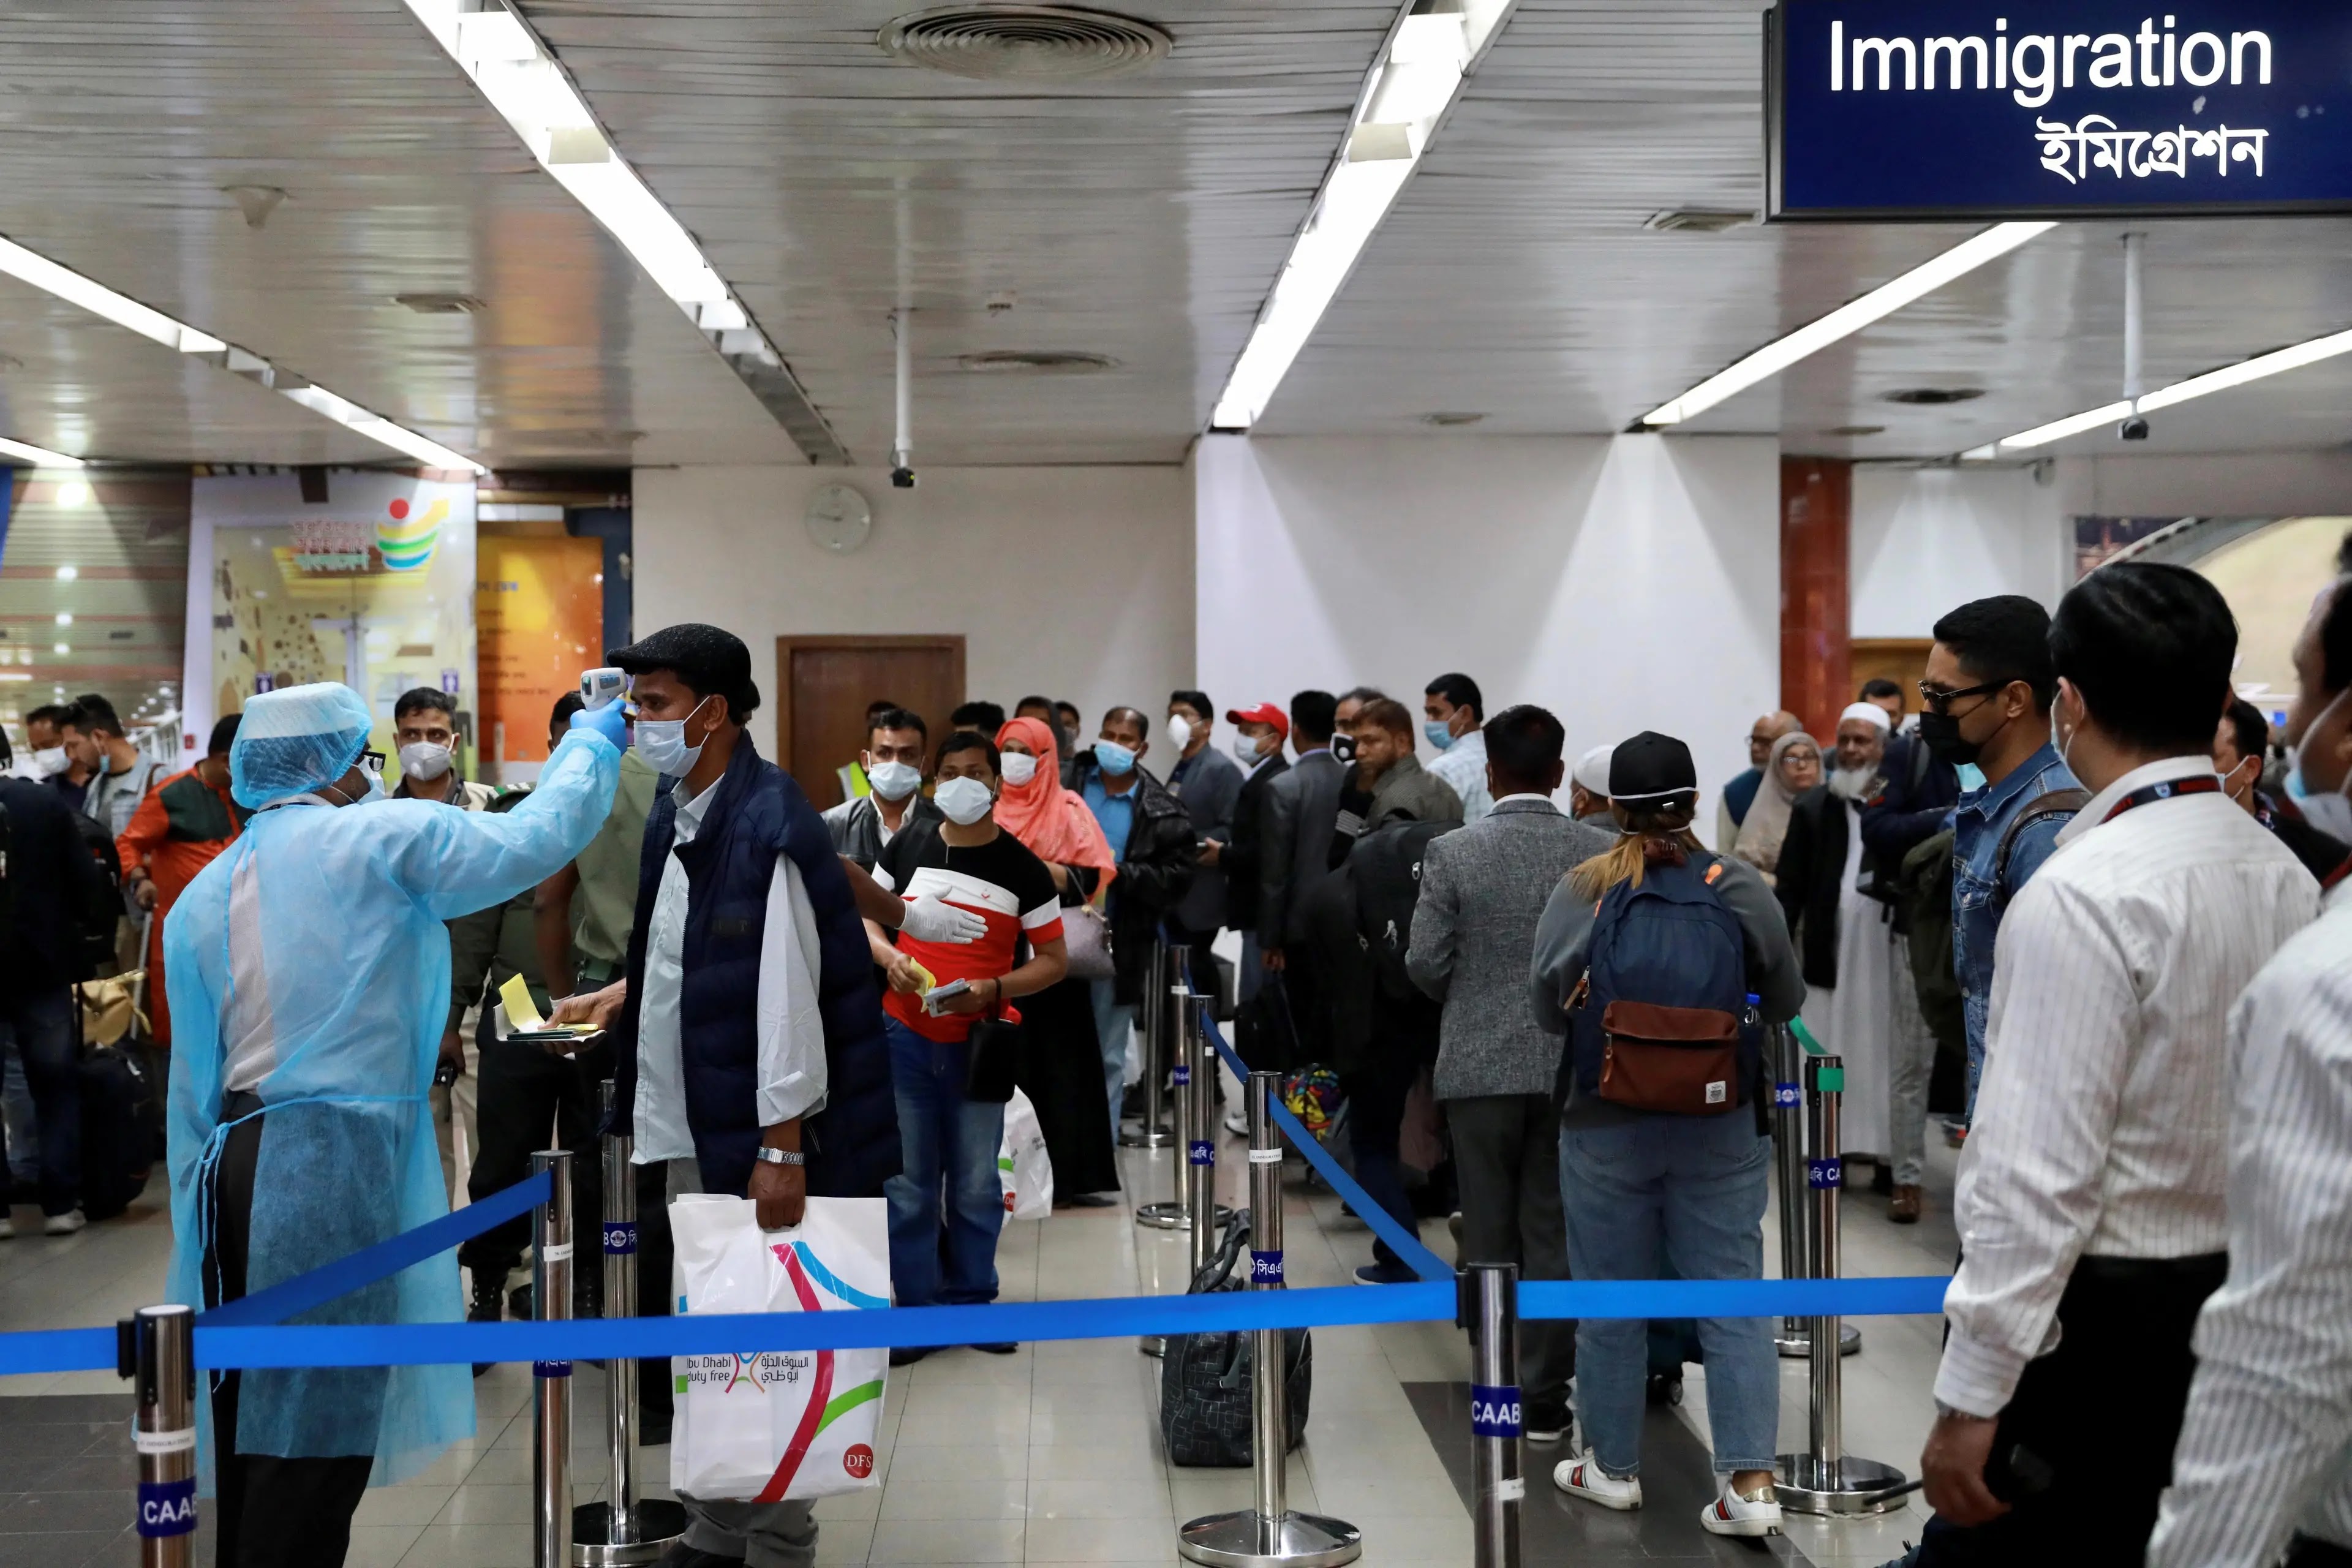 ملک کے تمام ایئرپورٹس پر مسافروں کی کوویڈ ٹیسٹنگ کا عمل شروع